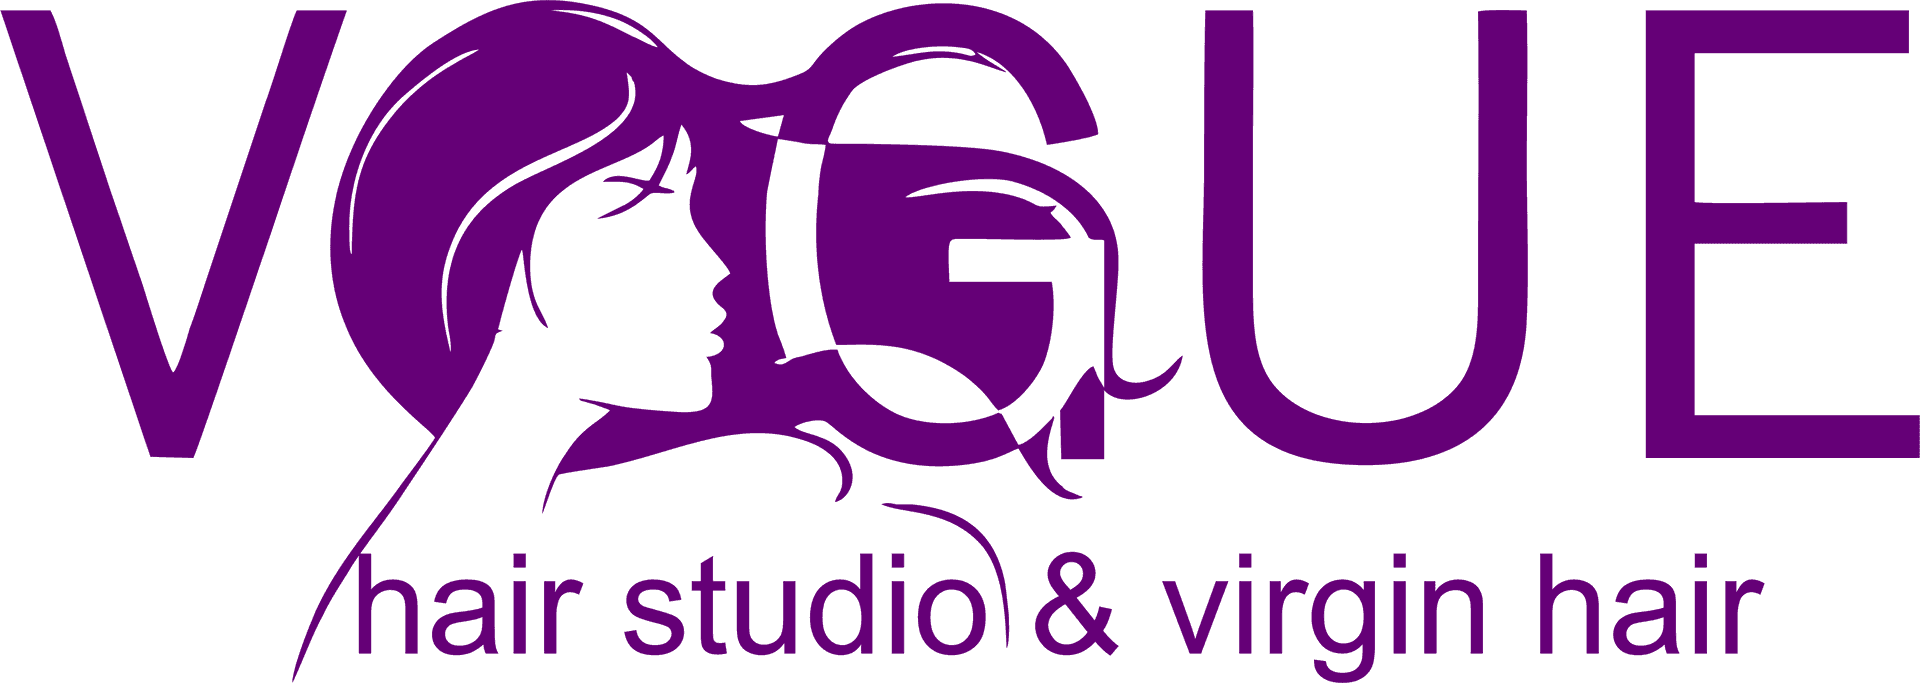 Vogue Hair Studio Logo PNG